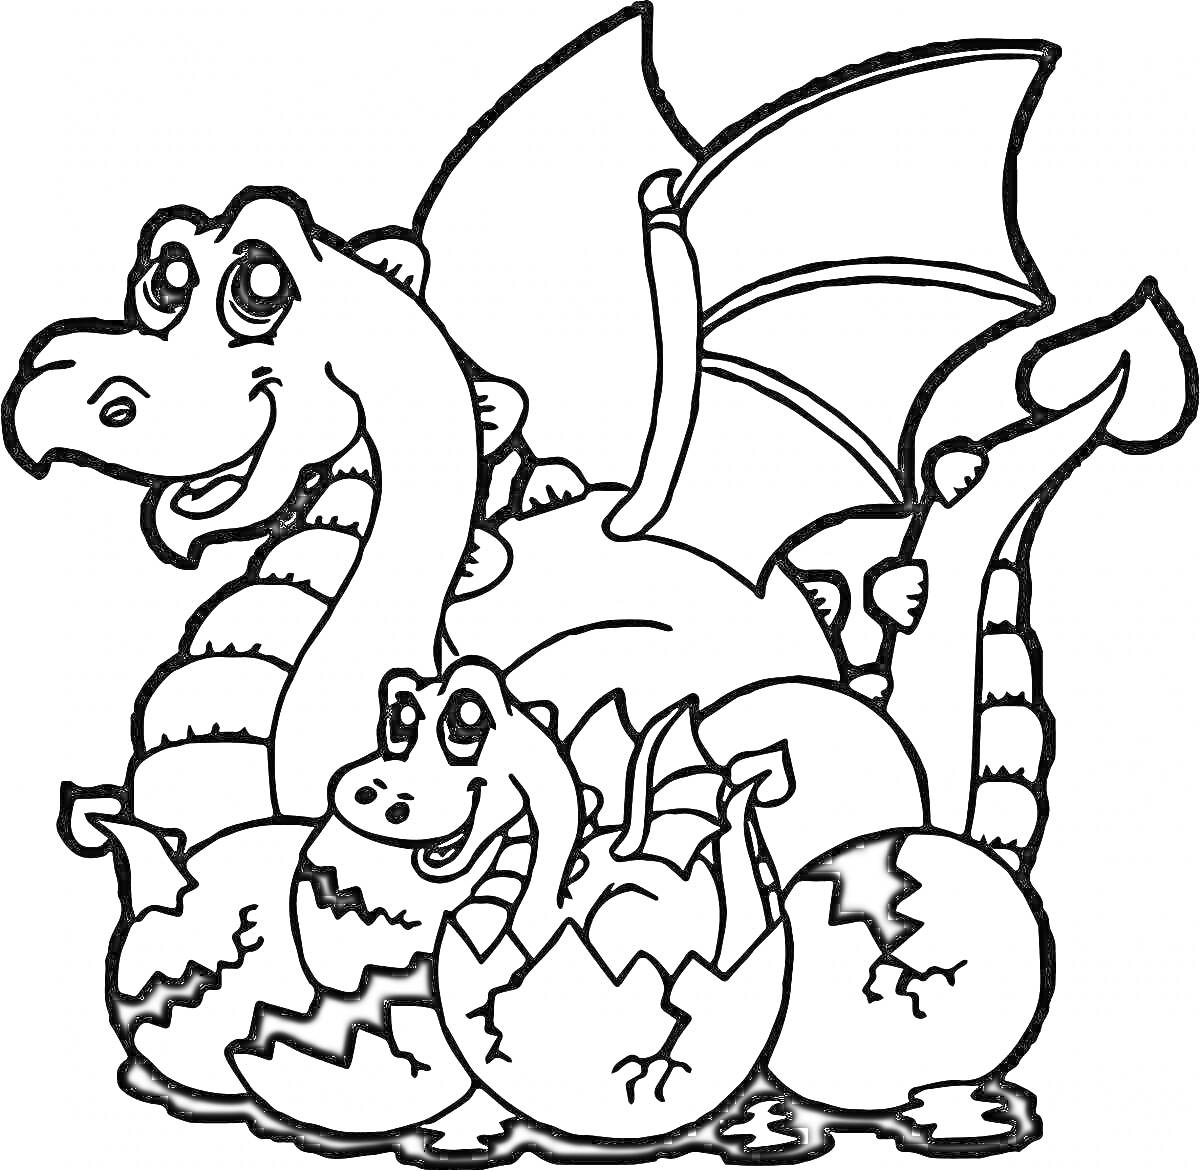 Раскраска Змей Горыныч с одним телом и тремя головами сзади, младенец-змей Горыныч вылупившийся из одного из трех яиц с трещинами